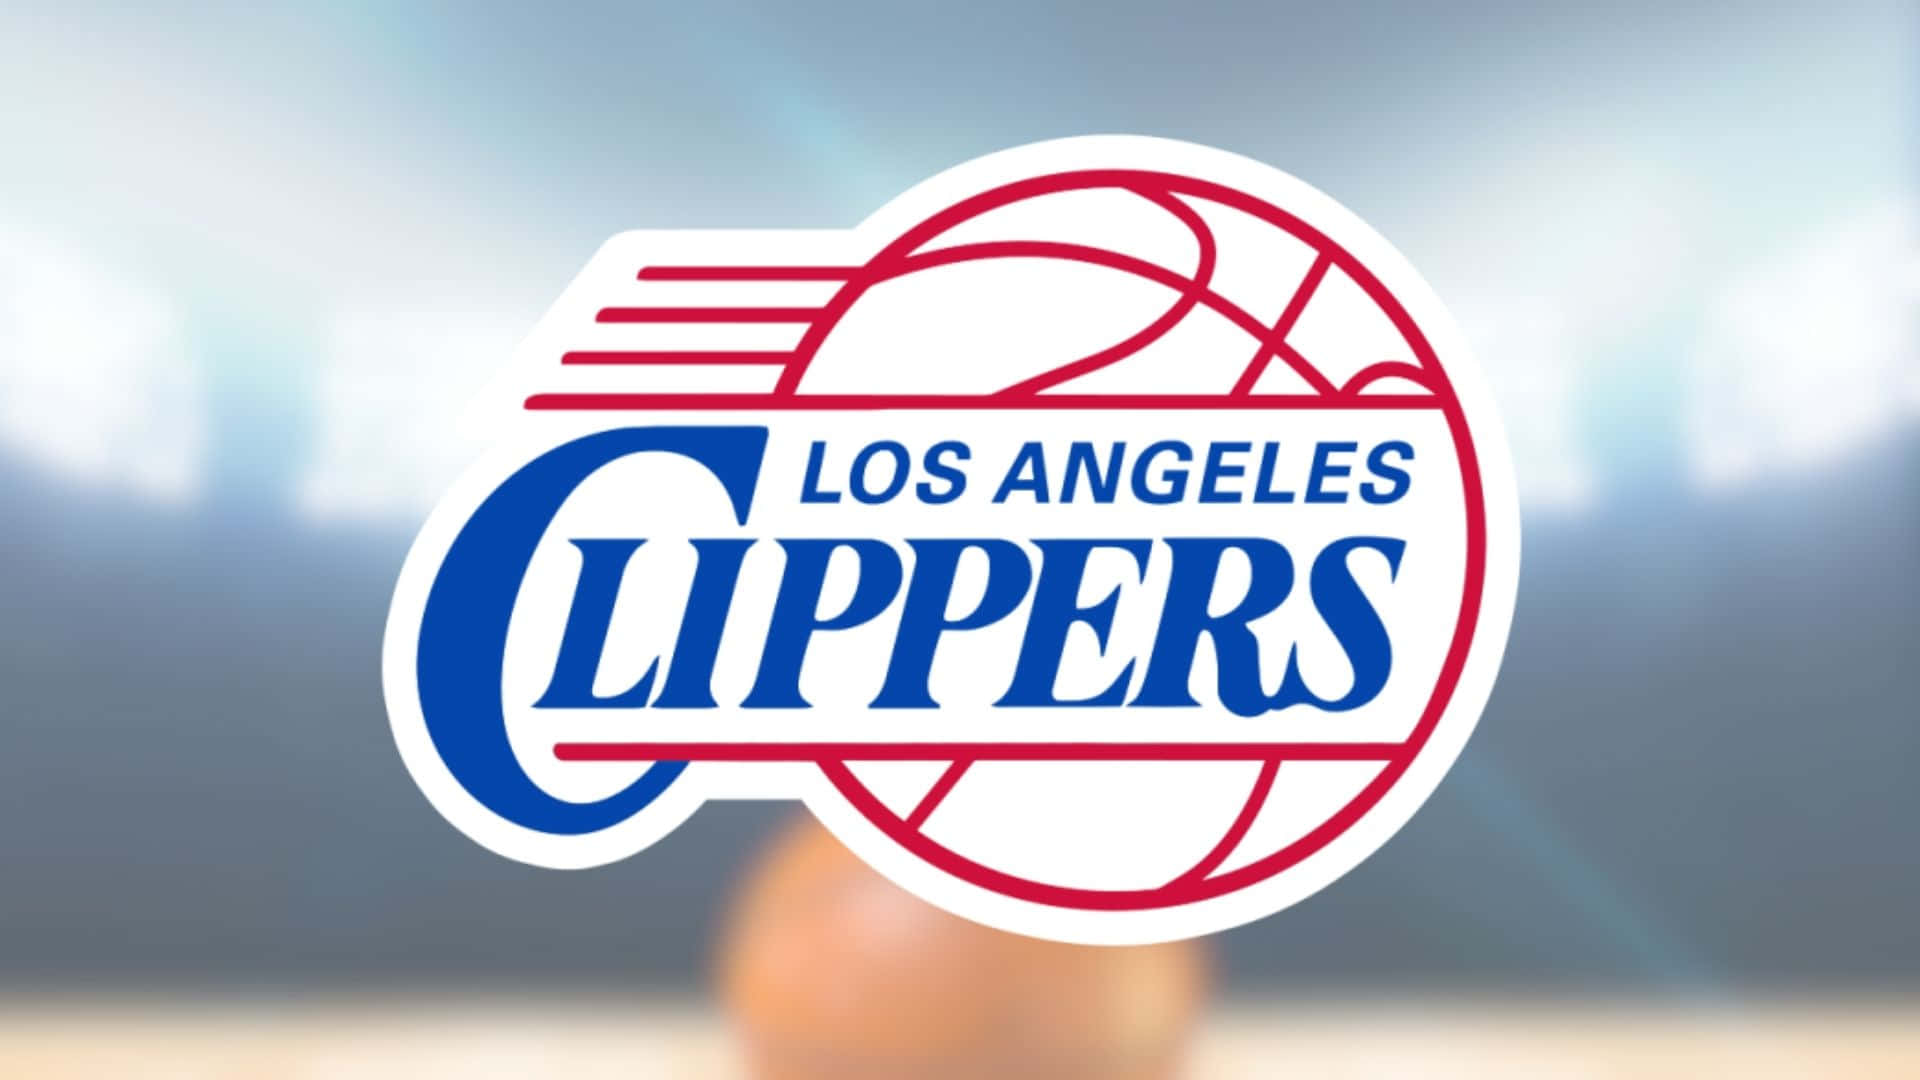 Dielos Angeles Clippers Machen Sich Bereit, Um Zu Spielen. Wallpaper